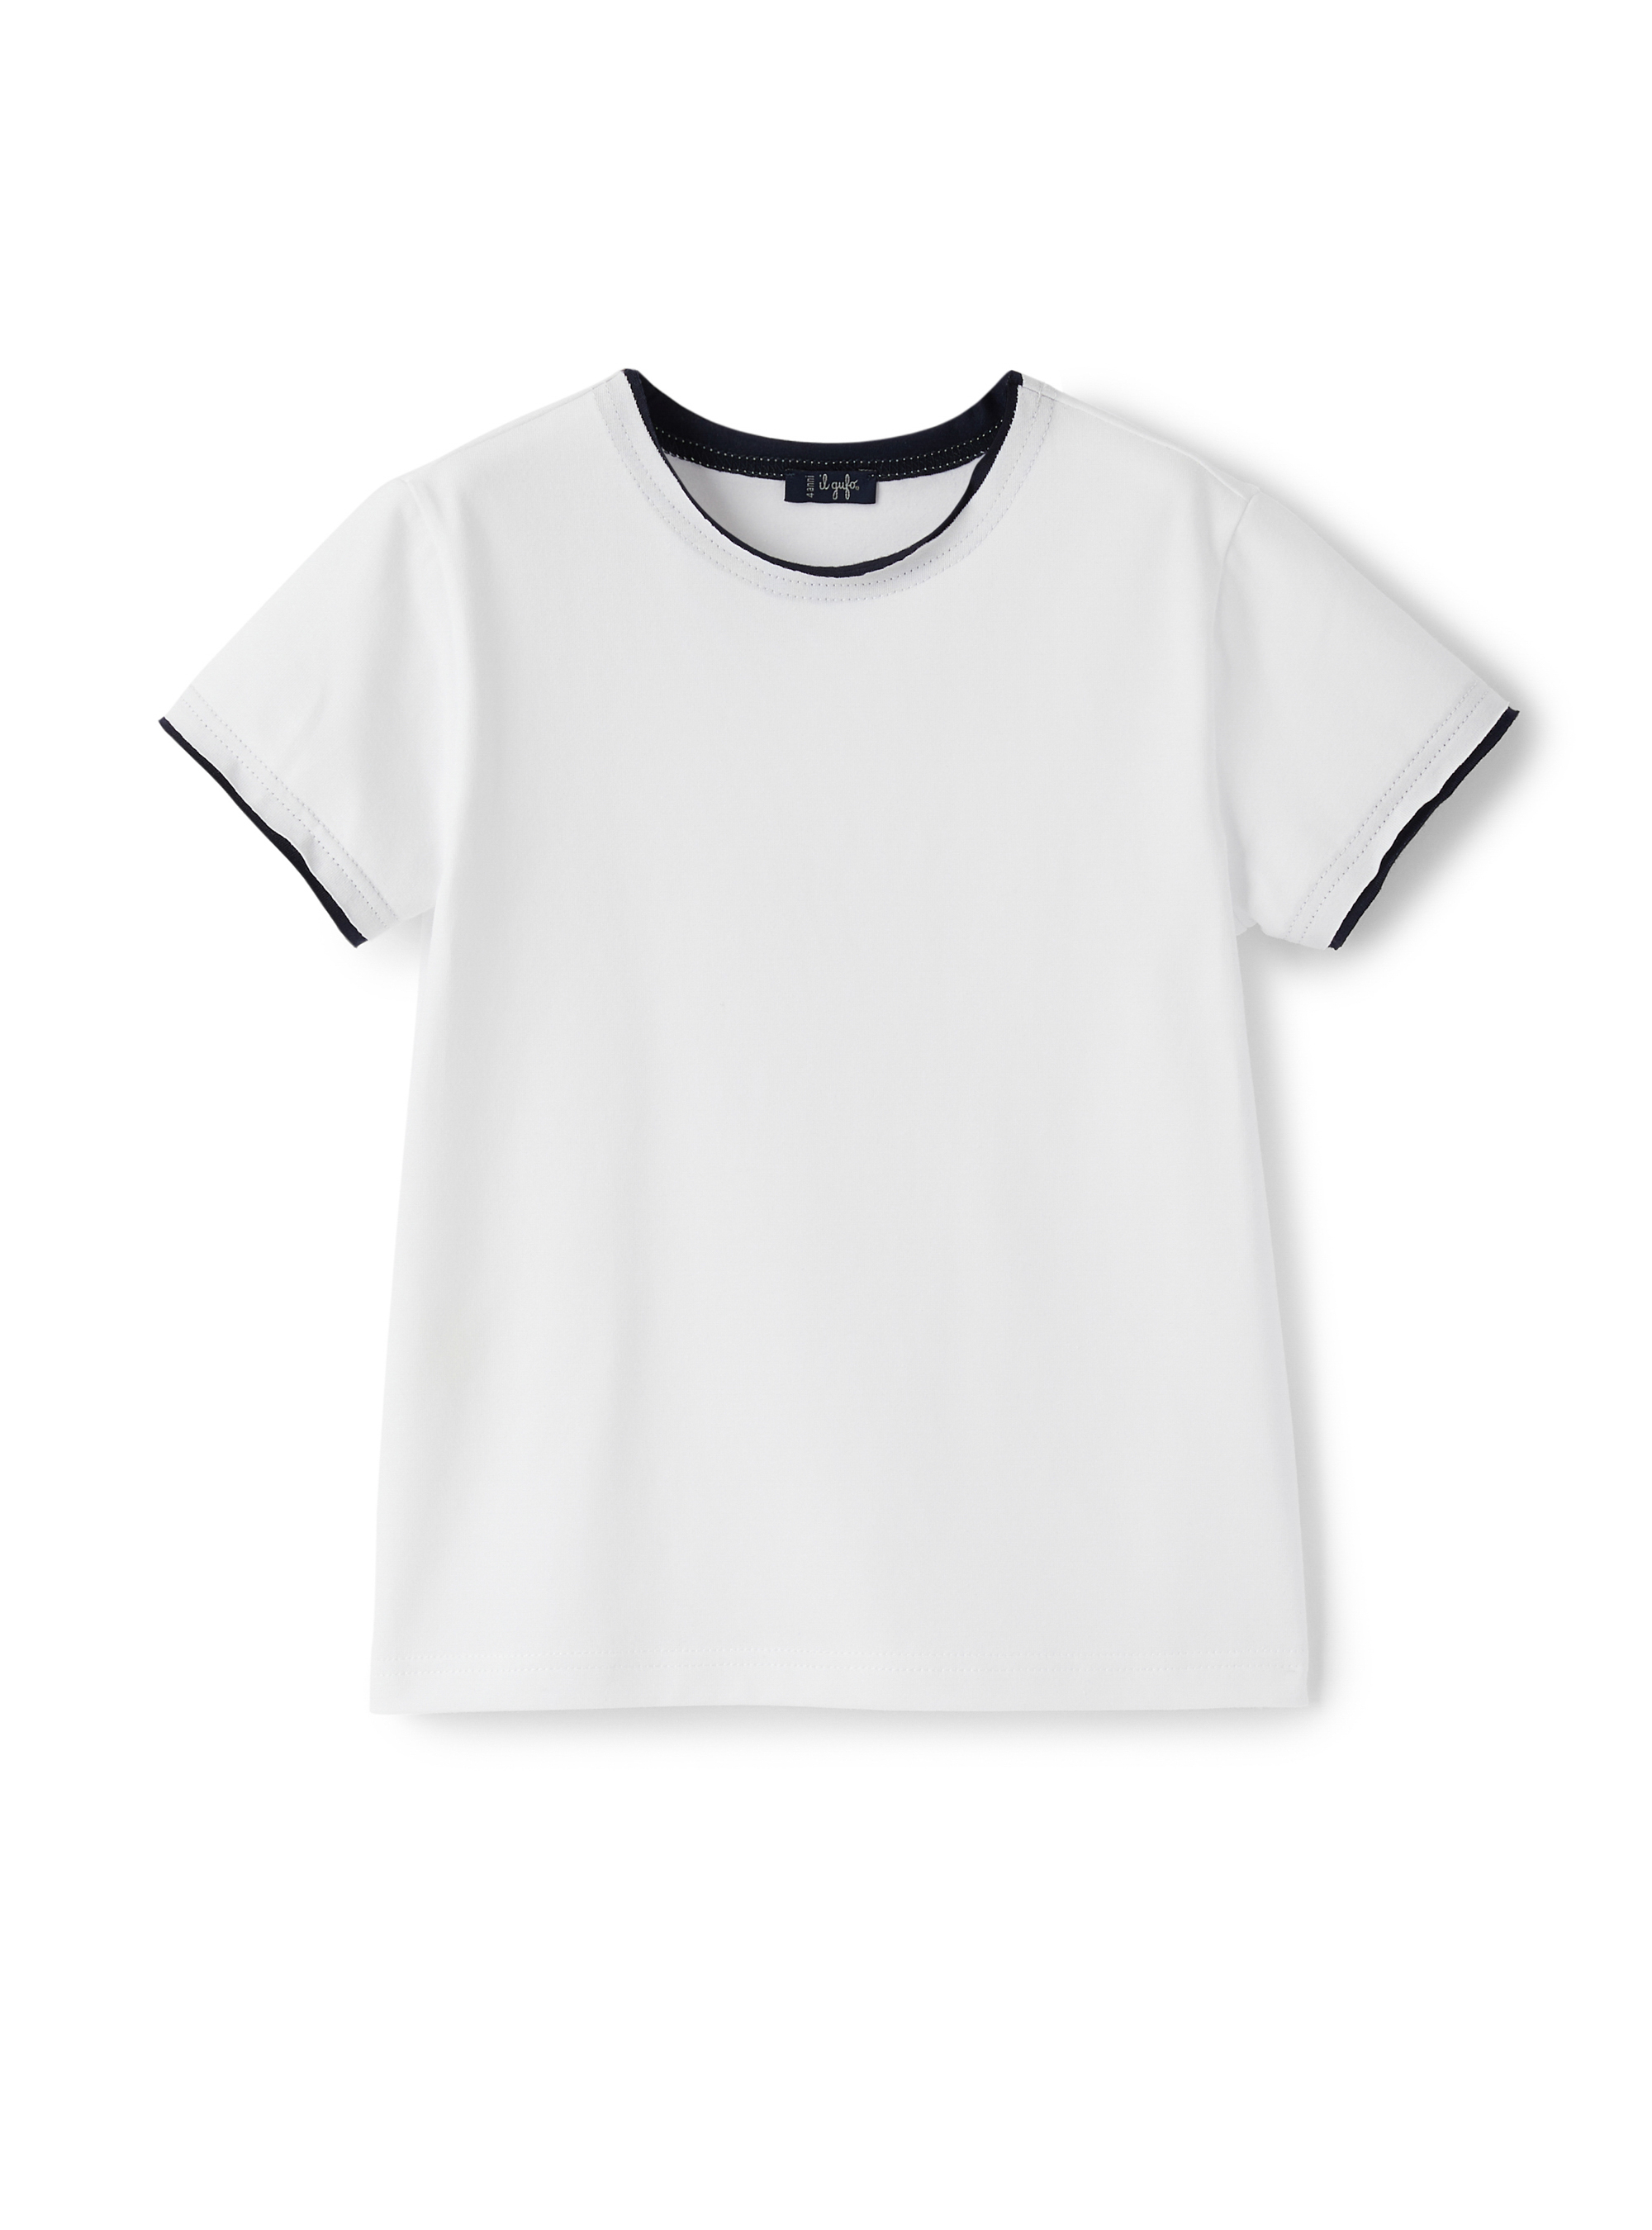 T-shirt blanc avec profilés bleus - T-shirts - Il Gufo